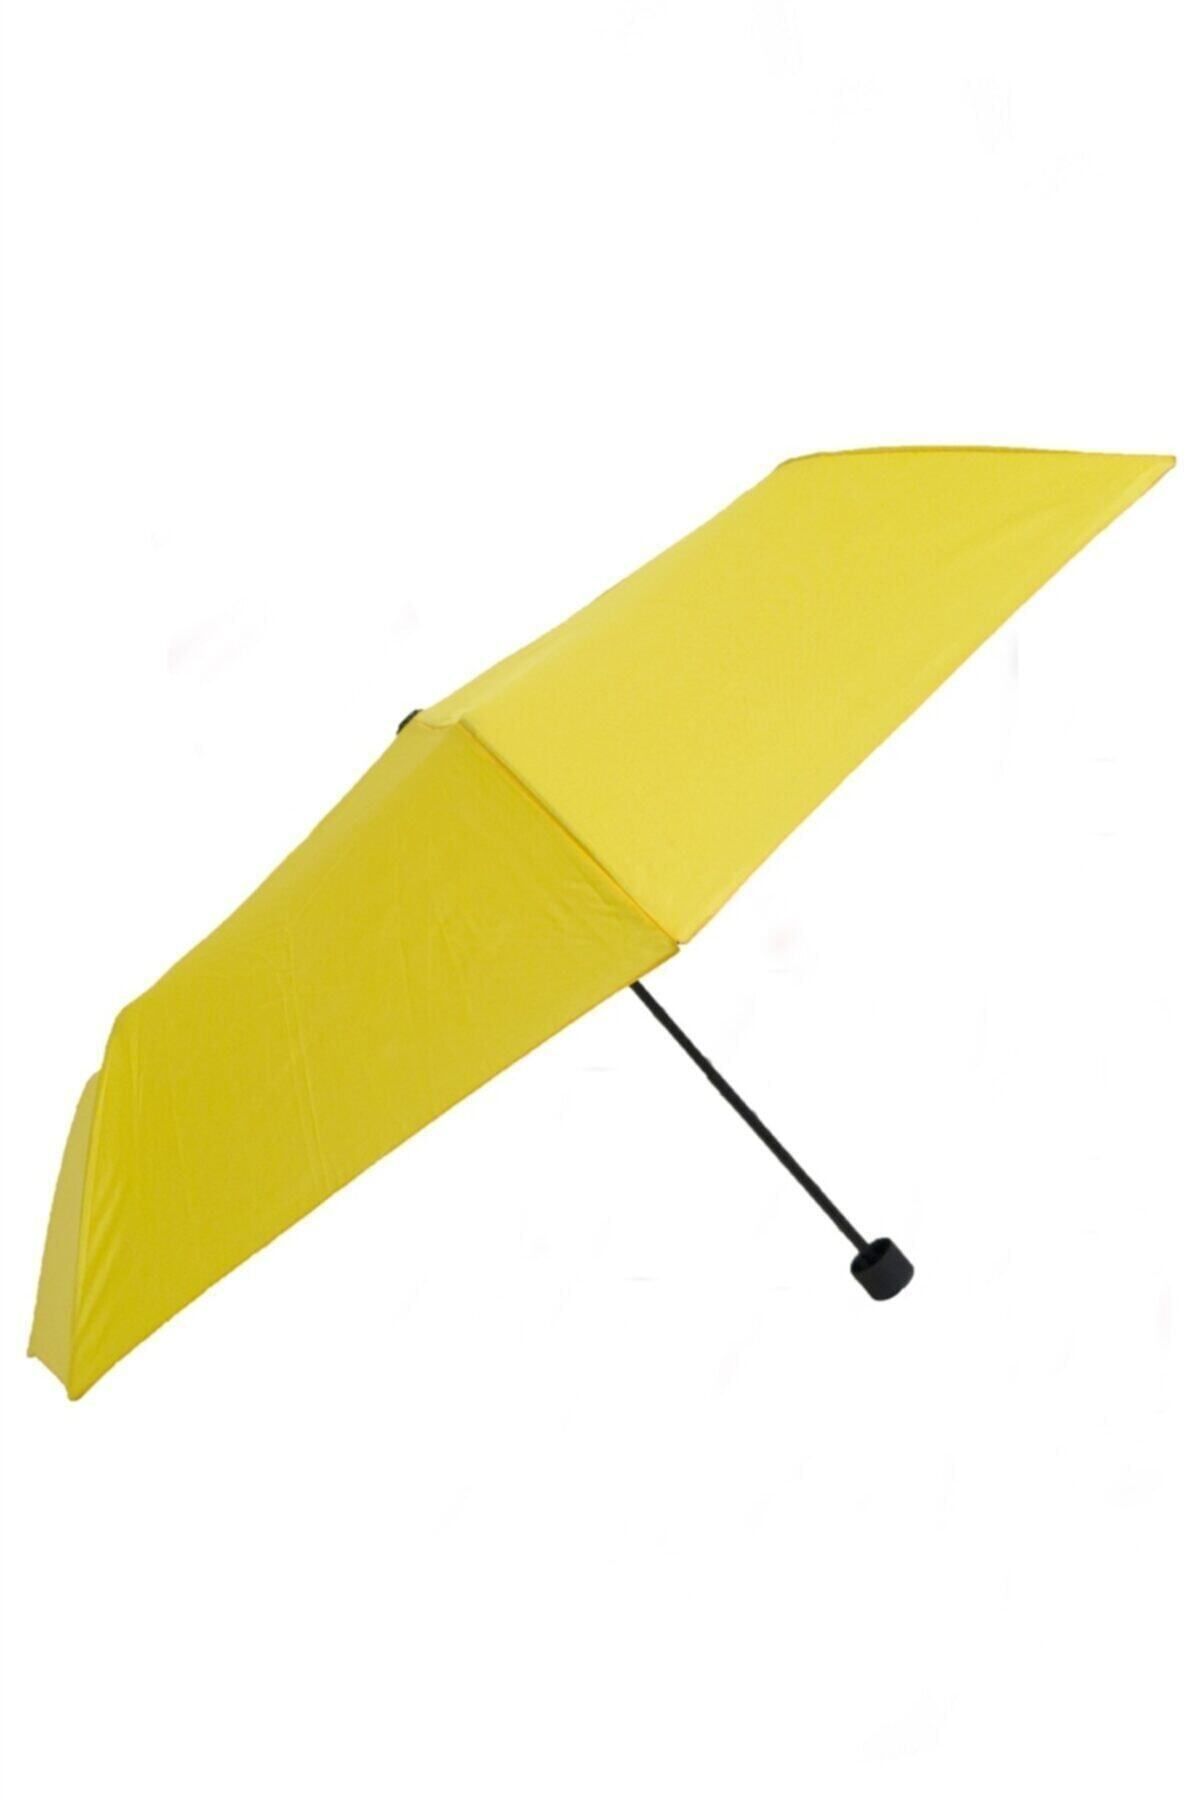 Marlux Sarı Süper Mini Şemsiye